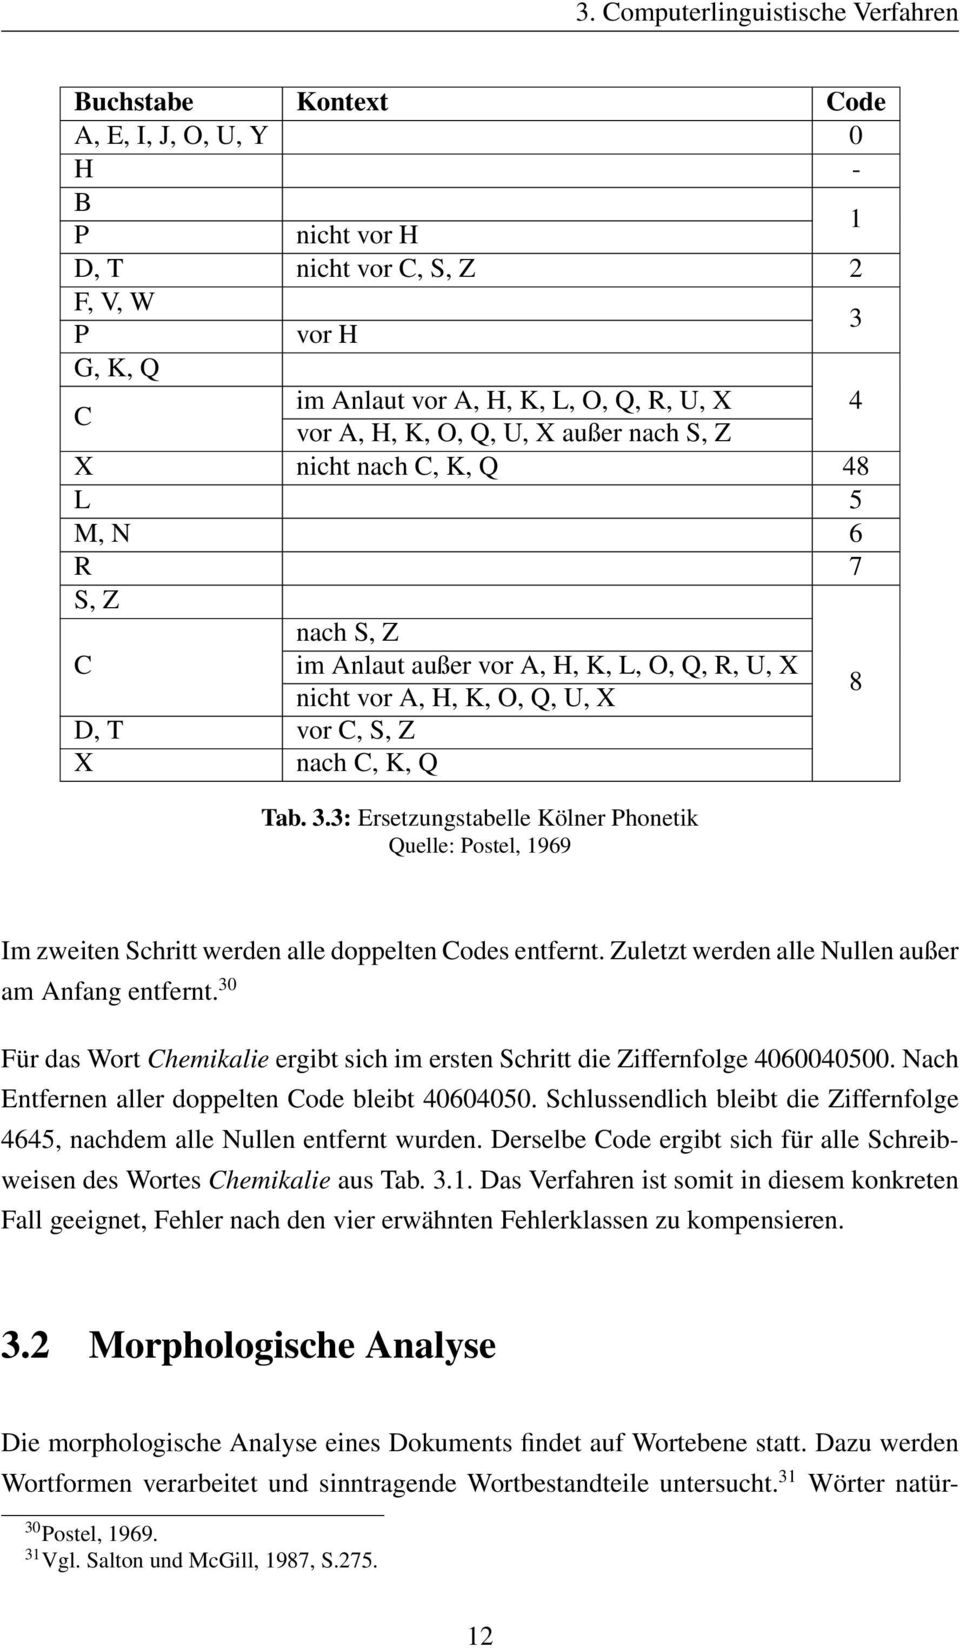 K, Q Tab. 3.3: Ersetzungstabelle Kölner Phonetik Quelle: Postel, 1969 8 Im zweiten Schritt werden alle doppelten Codes entfernt. Zuletzt werden alle Nullen außer am Anfang entfernt.